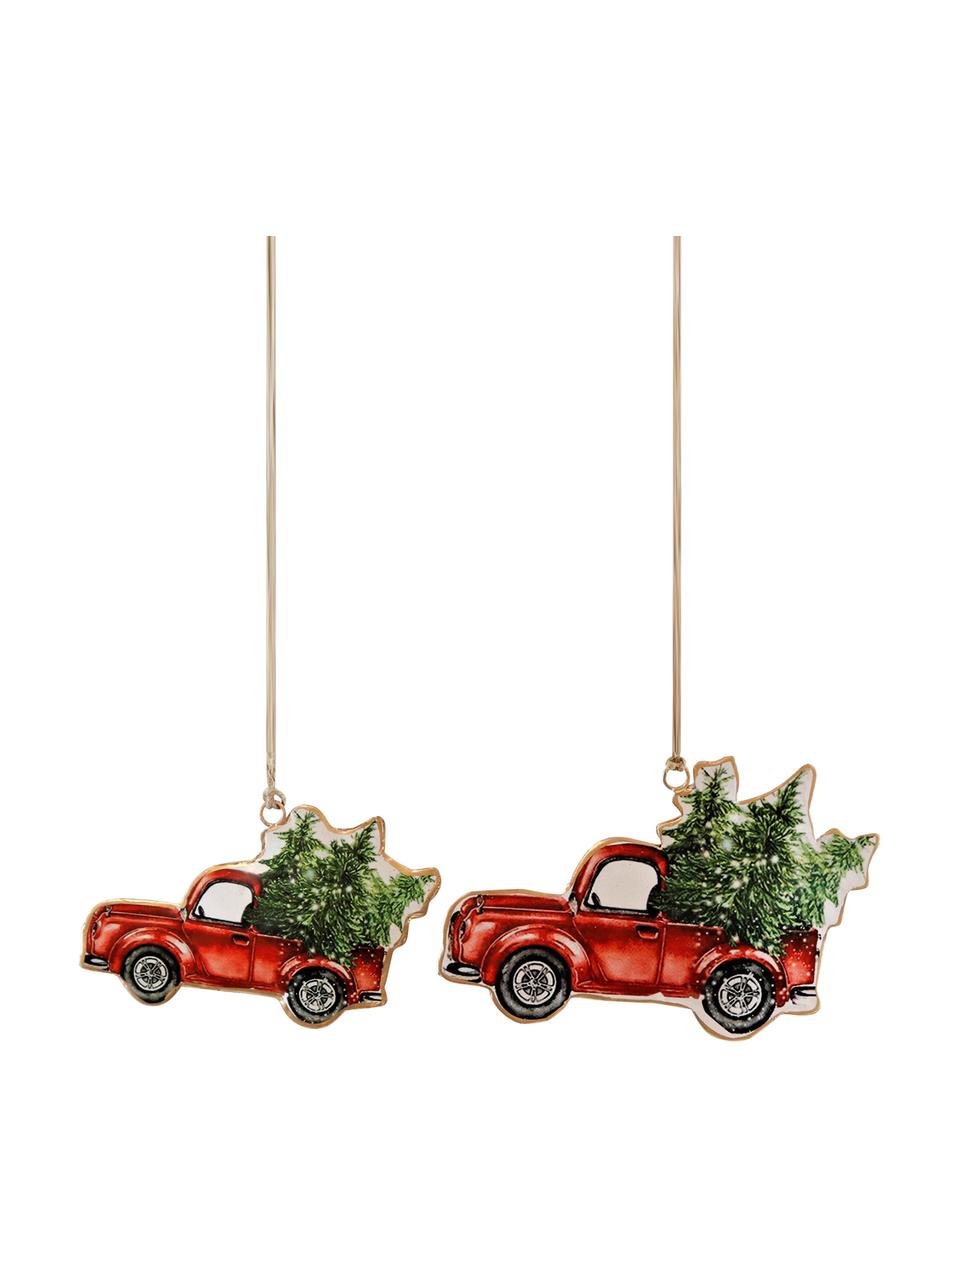 Décoration sapin de Noël Cars, 10 cm, 2 élém. | WestwingNow